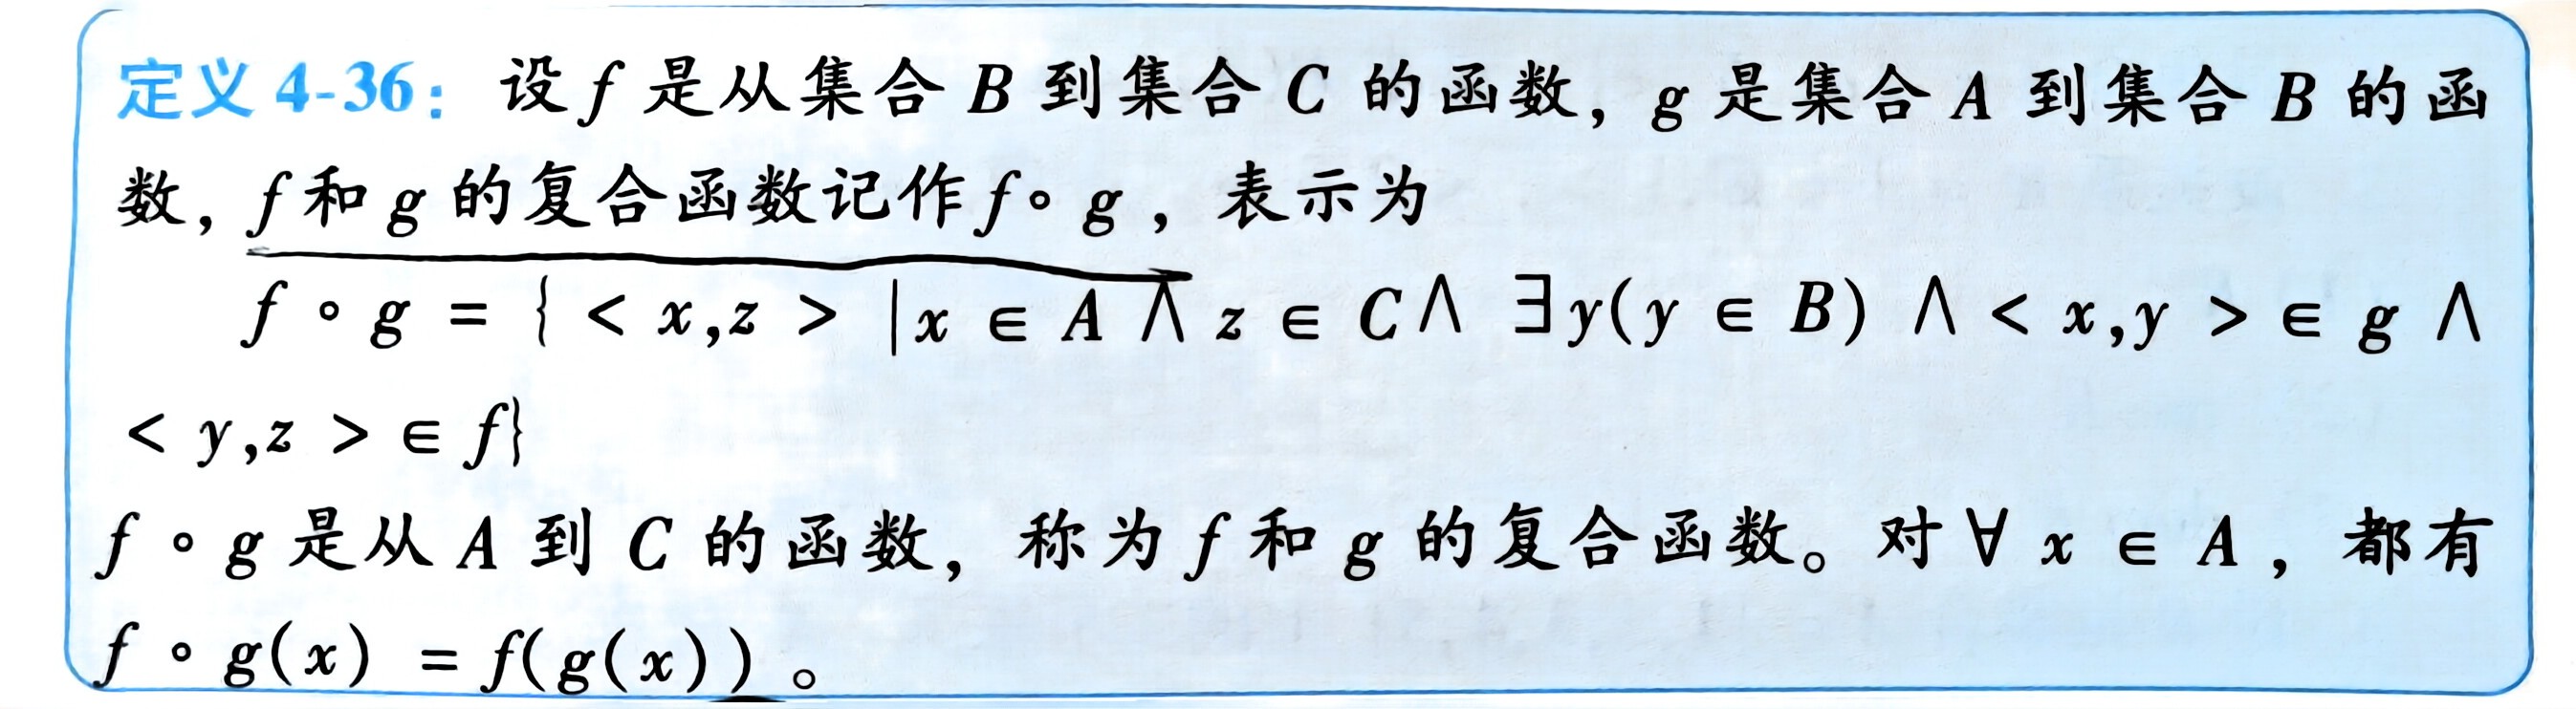 扫描件_定义4-36设f是从集合B到集合C的函数_1